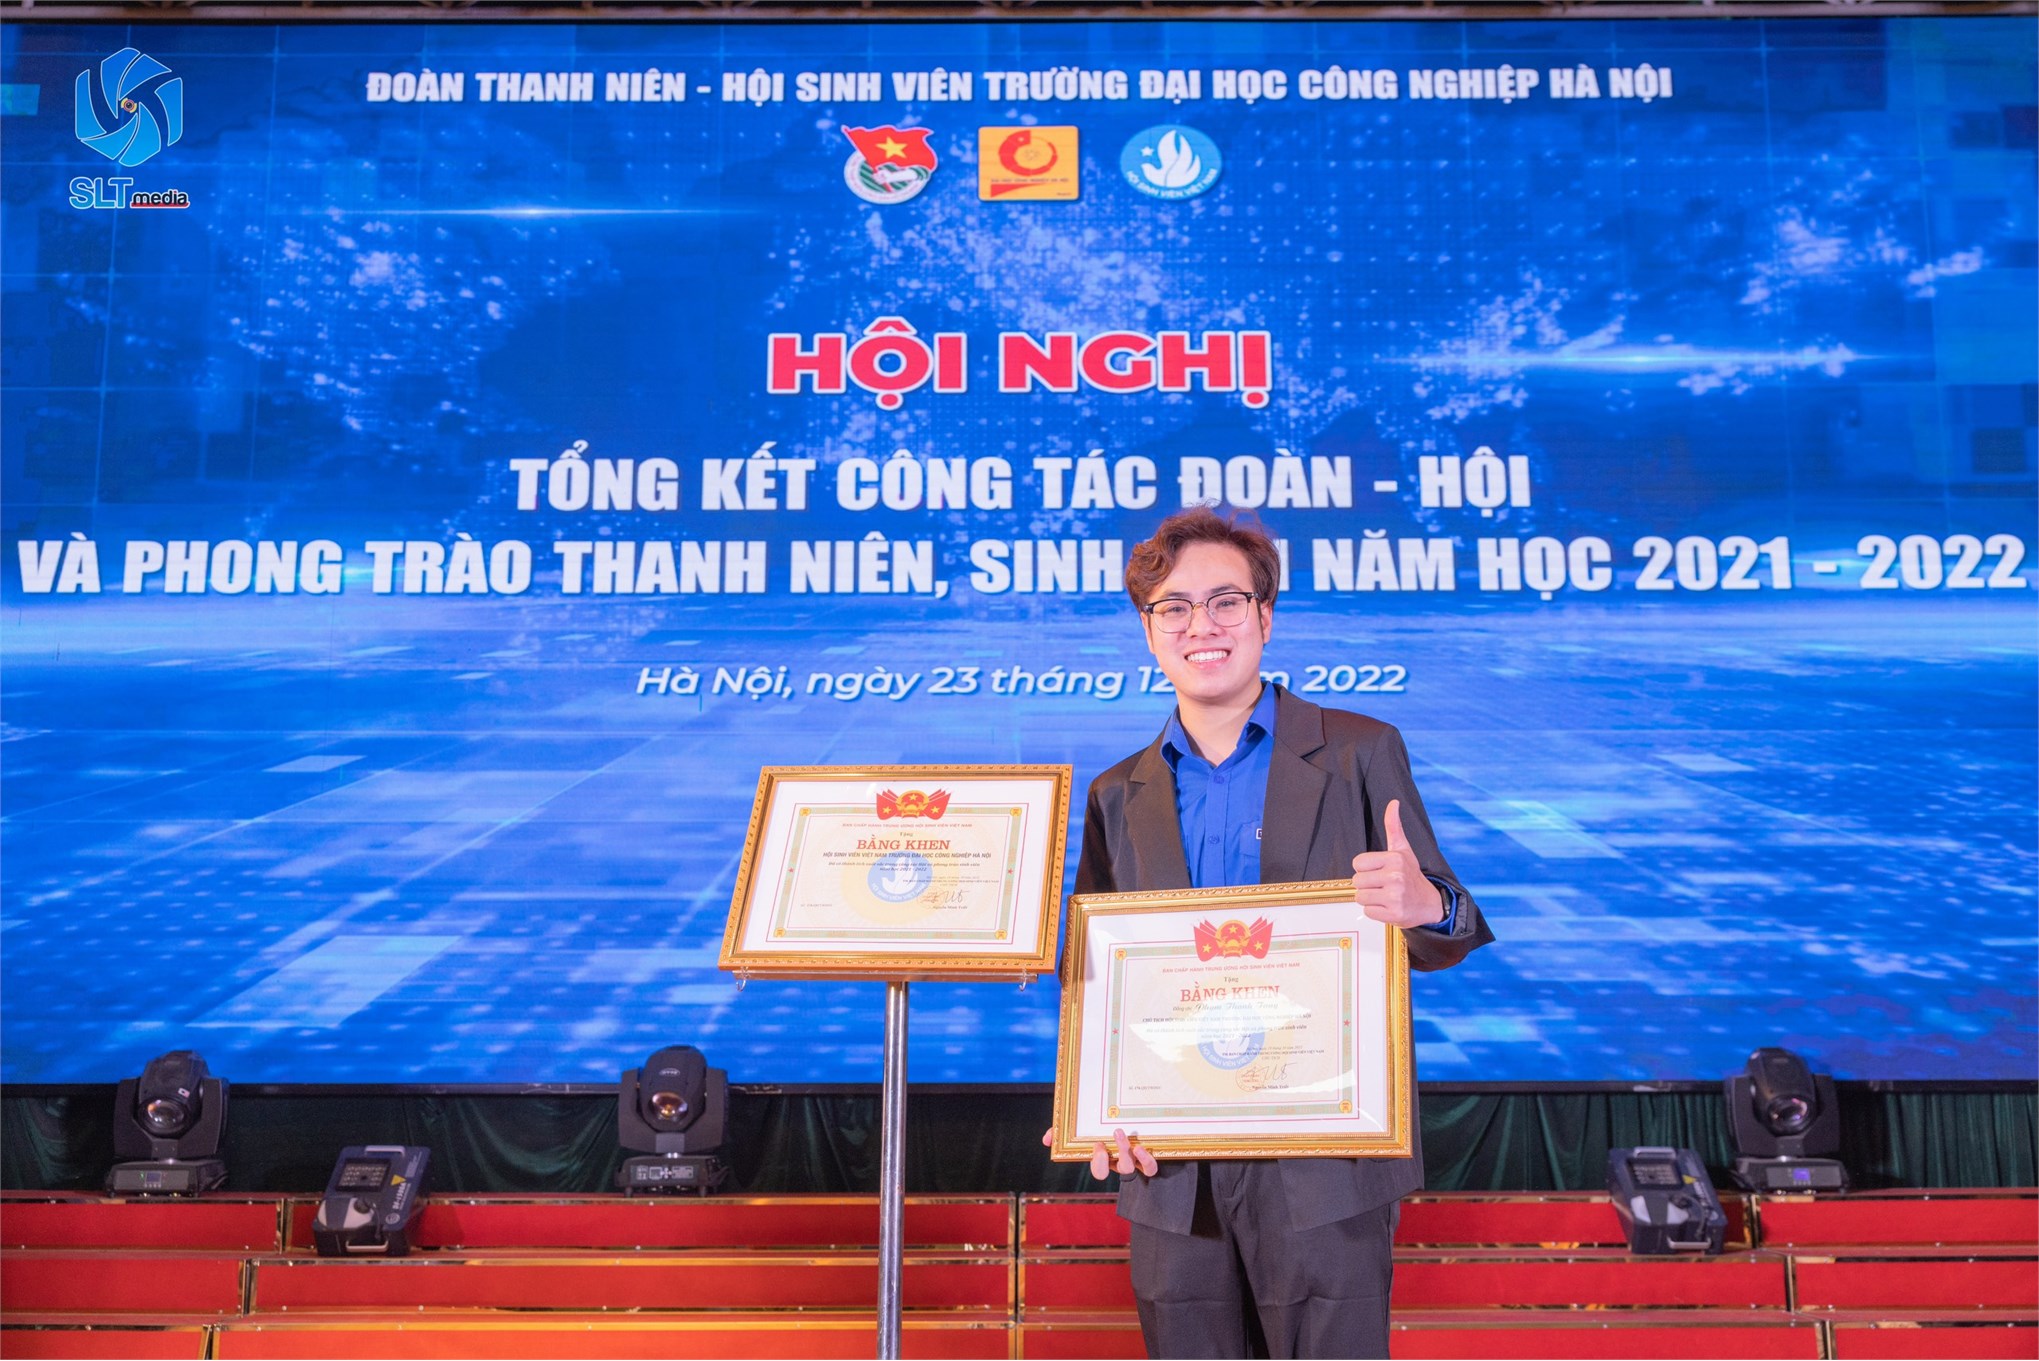 Phạm Thanh Tùng - cựu sinh viên lớp Cơ điện tử 2 khóa 13 năng động, nhiệt huyết và đầy sức trẻ